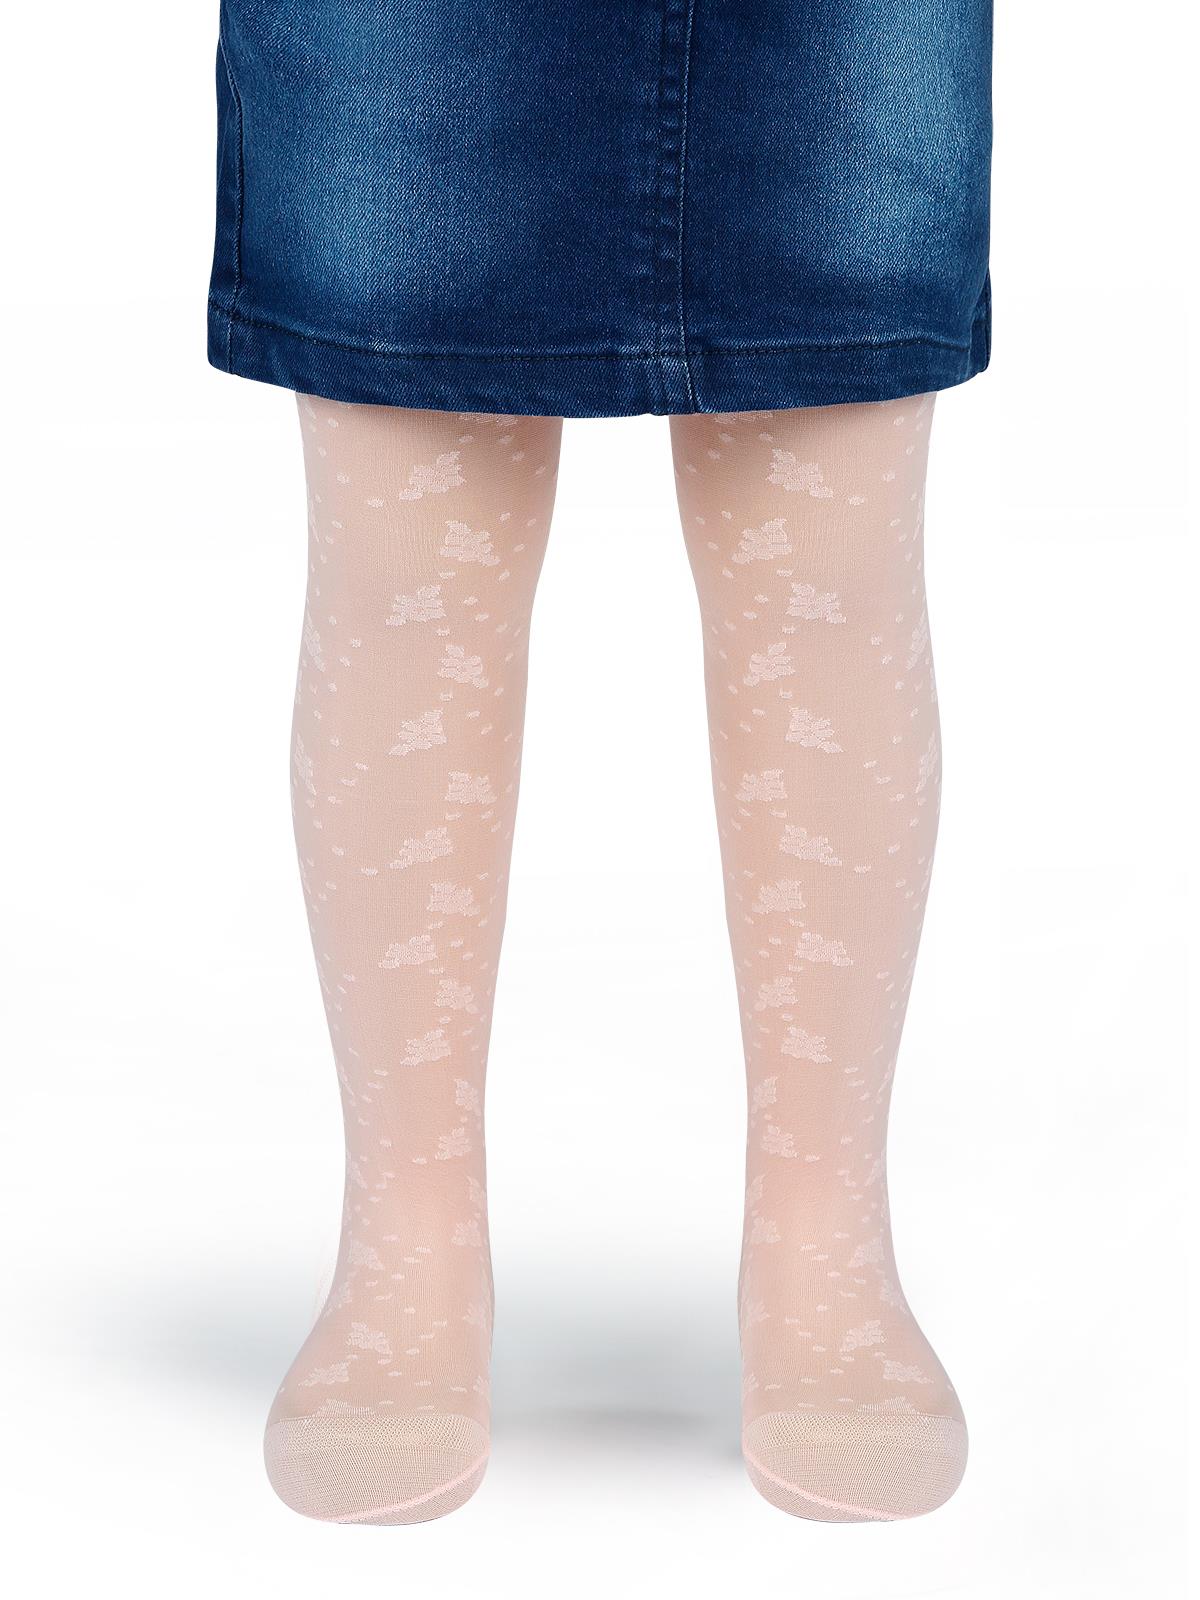 Bella Calze Kız Çocuk Külotlu Çorap 2-11 Yaş Pudra Pembe